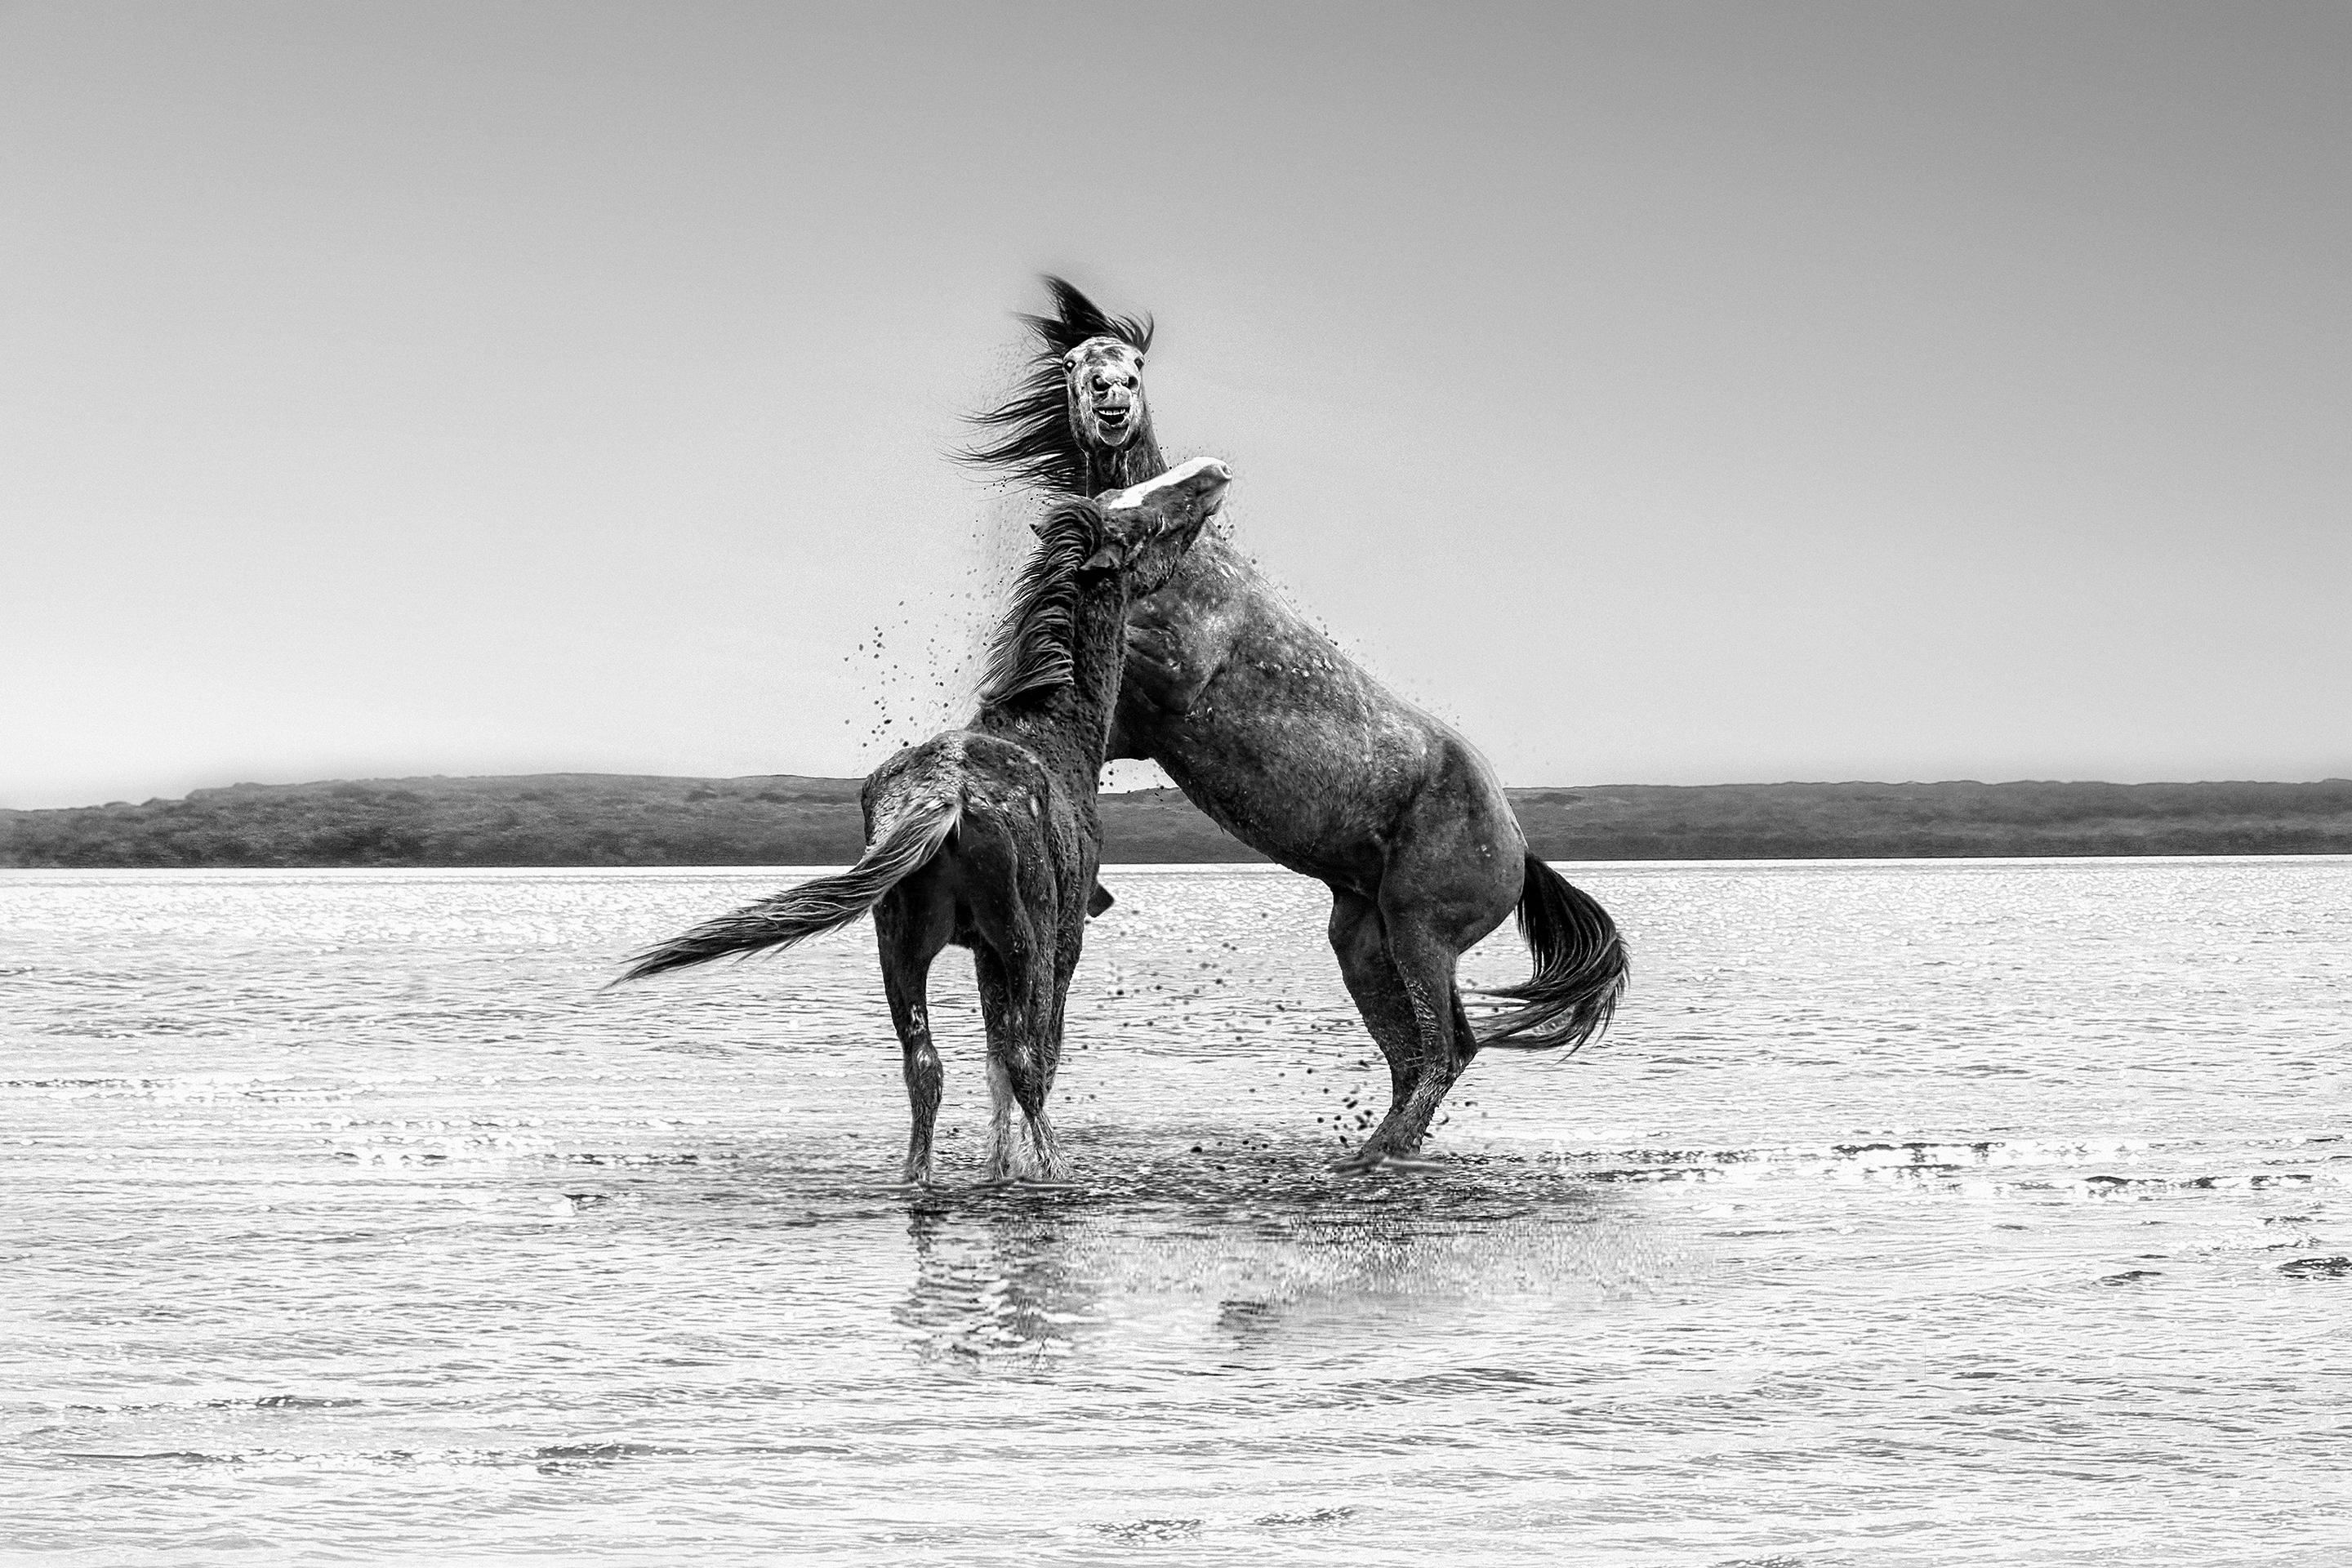 Black and White Photograph Shane Russeck - « The Pugilist » - Photographie en noir et blanc de chevaux sauvages, moutons, 40x60 